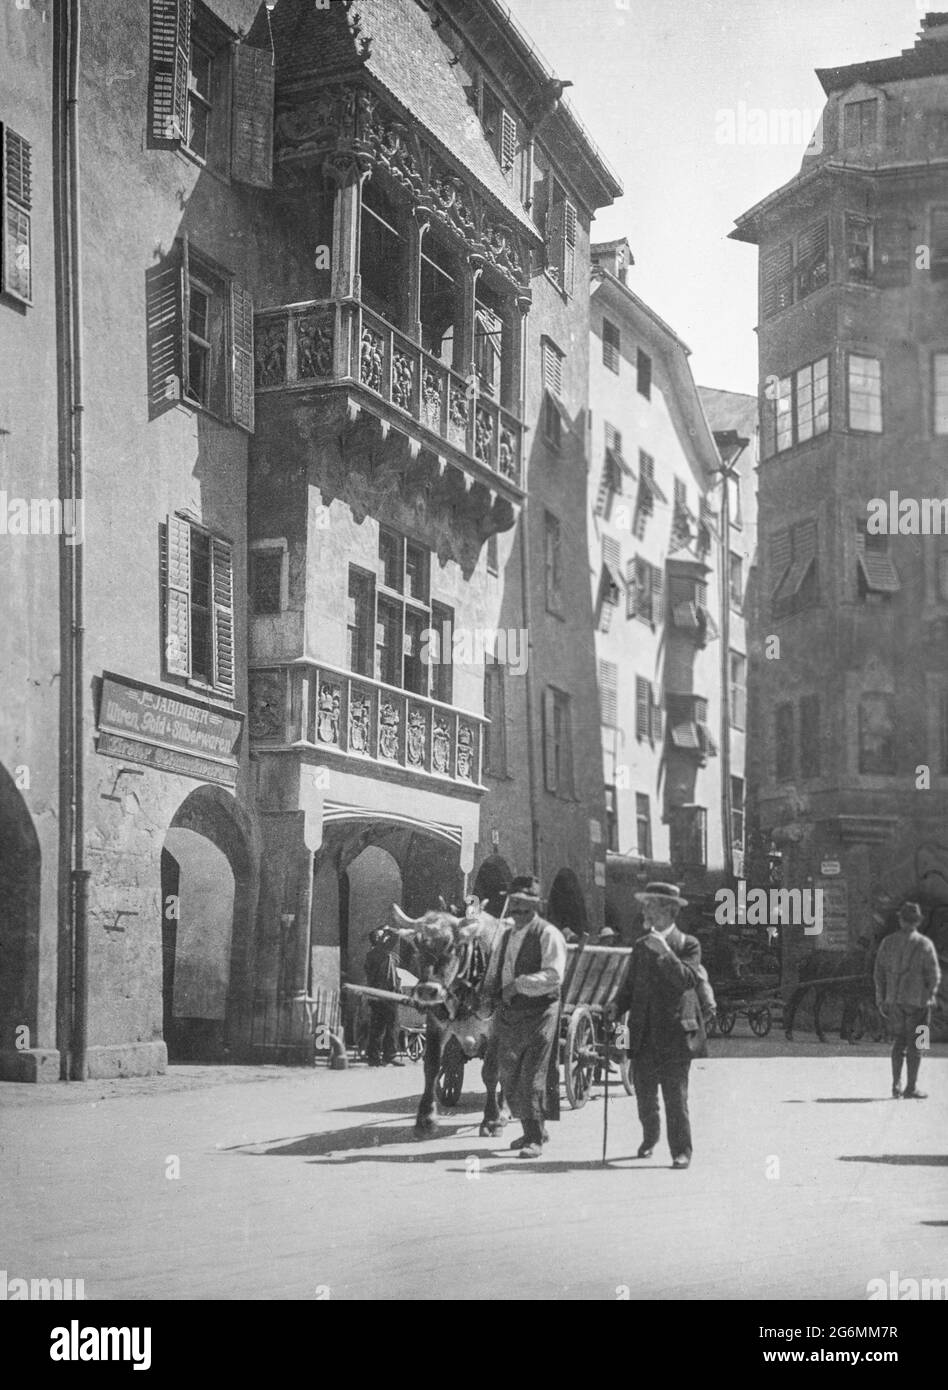 Ein Schwarzweißfoto aus dem frühen 20. Jahrhundert, aufgenommen in der Altstadt von Innsbruck, Österreich, zeigt das berühmte Goldene Dachl. Auf der Straße hat ein Mann einen Wagen, der von einer Kuh oder einem Stier gezogen wird. Stockfoto